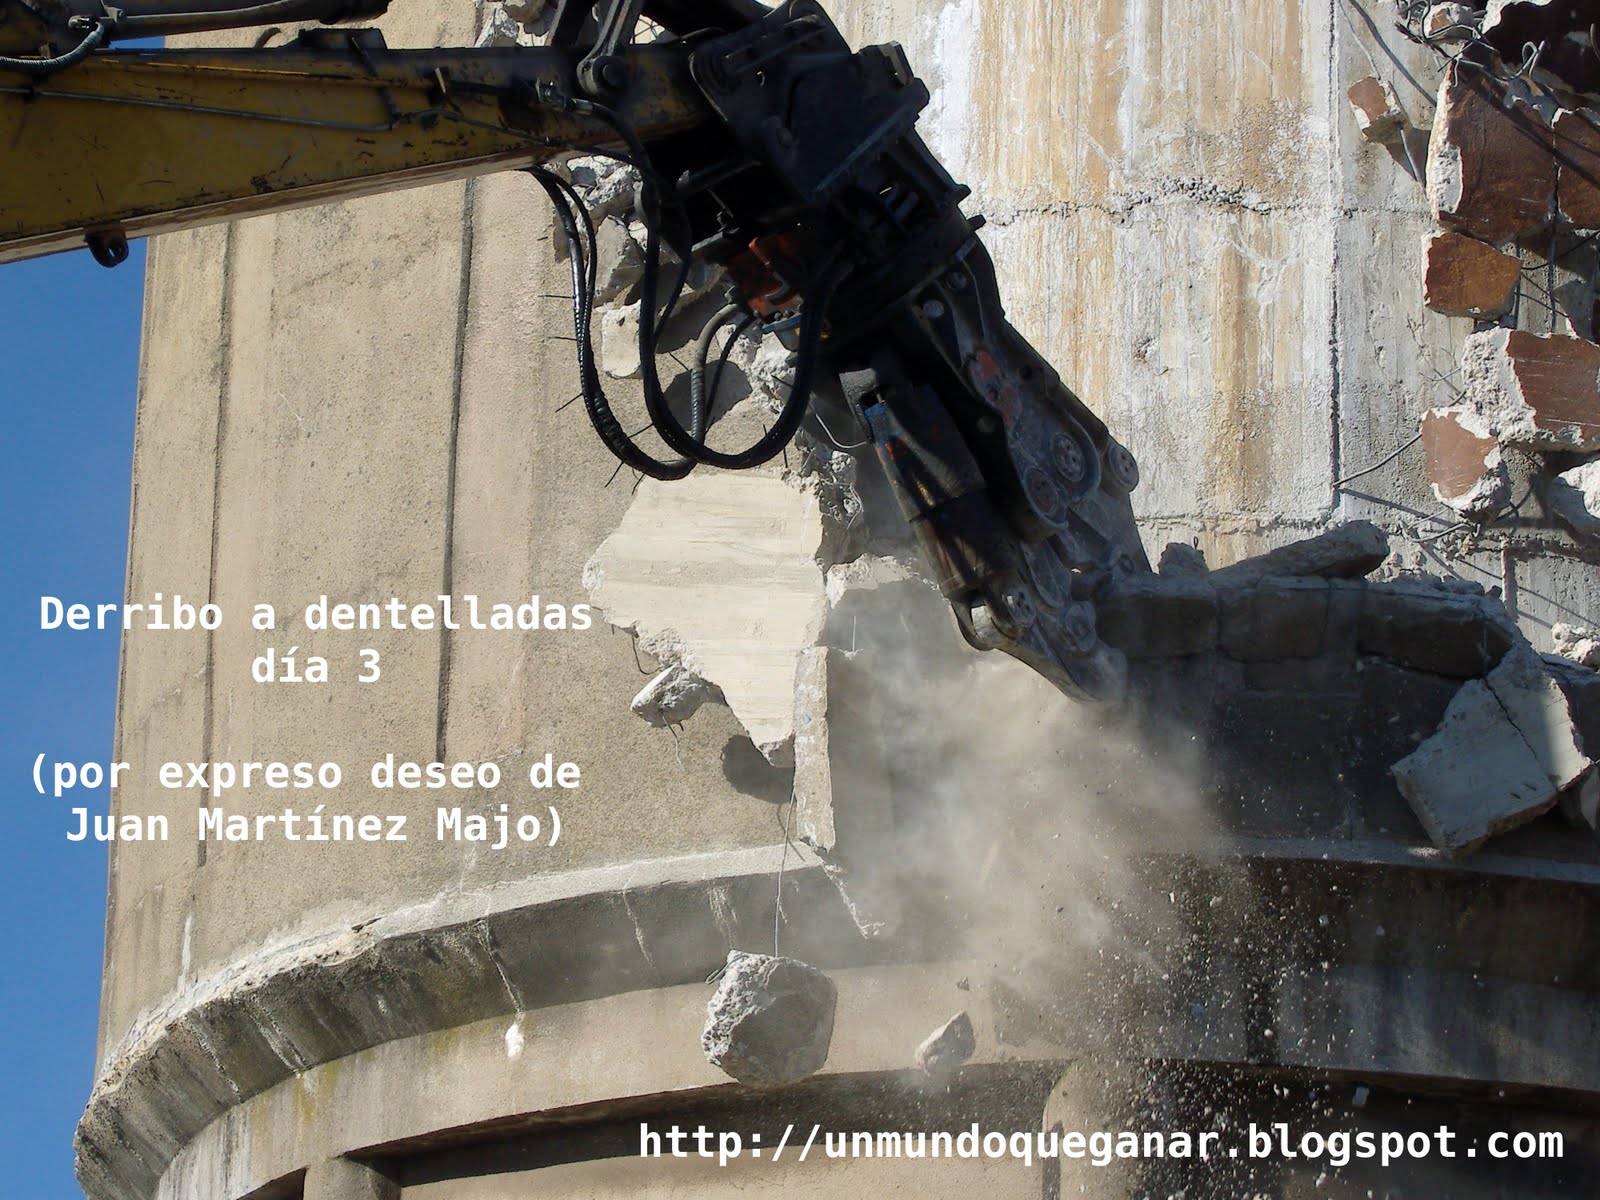 [demolición+del+depósito+de+aguas+día+3+de+valencia+de+don+juan.jpg]